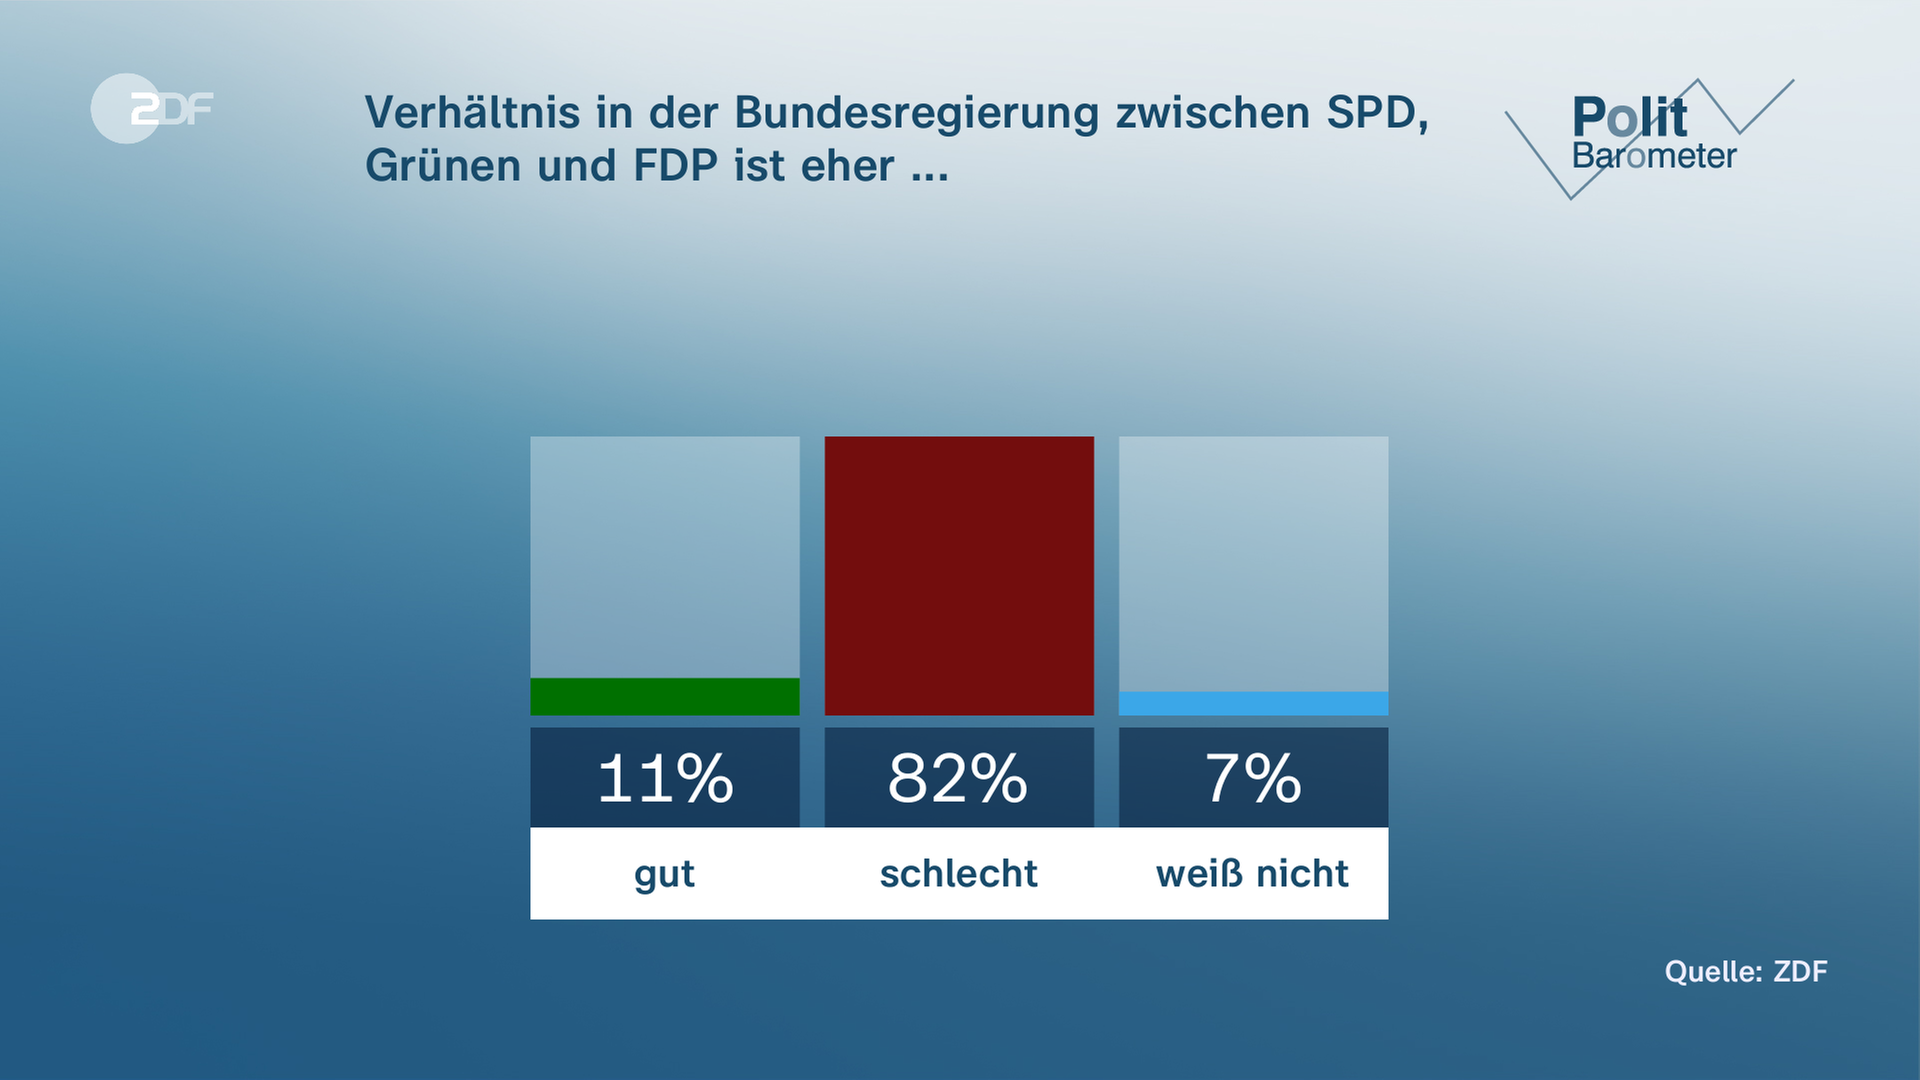 Politbaromteter: Verhältnis in der Bundesregierung zwischen SPD, Grünen und FDP ist eher